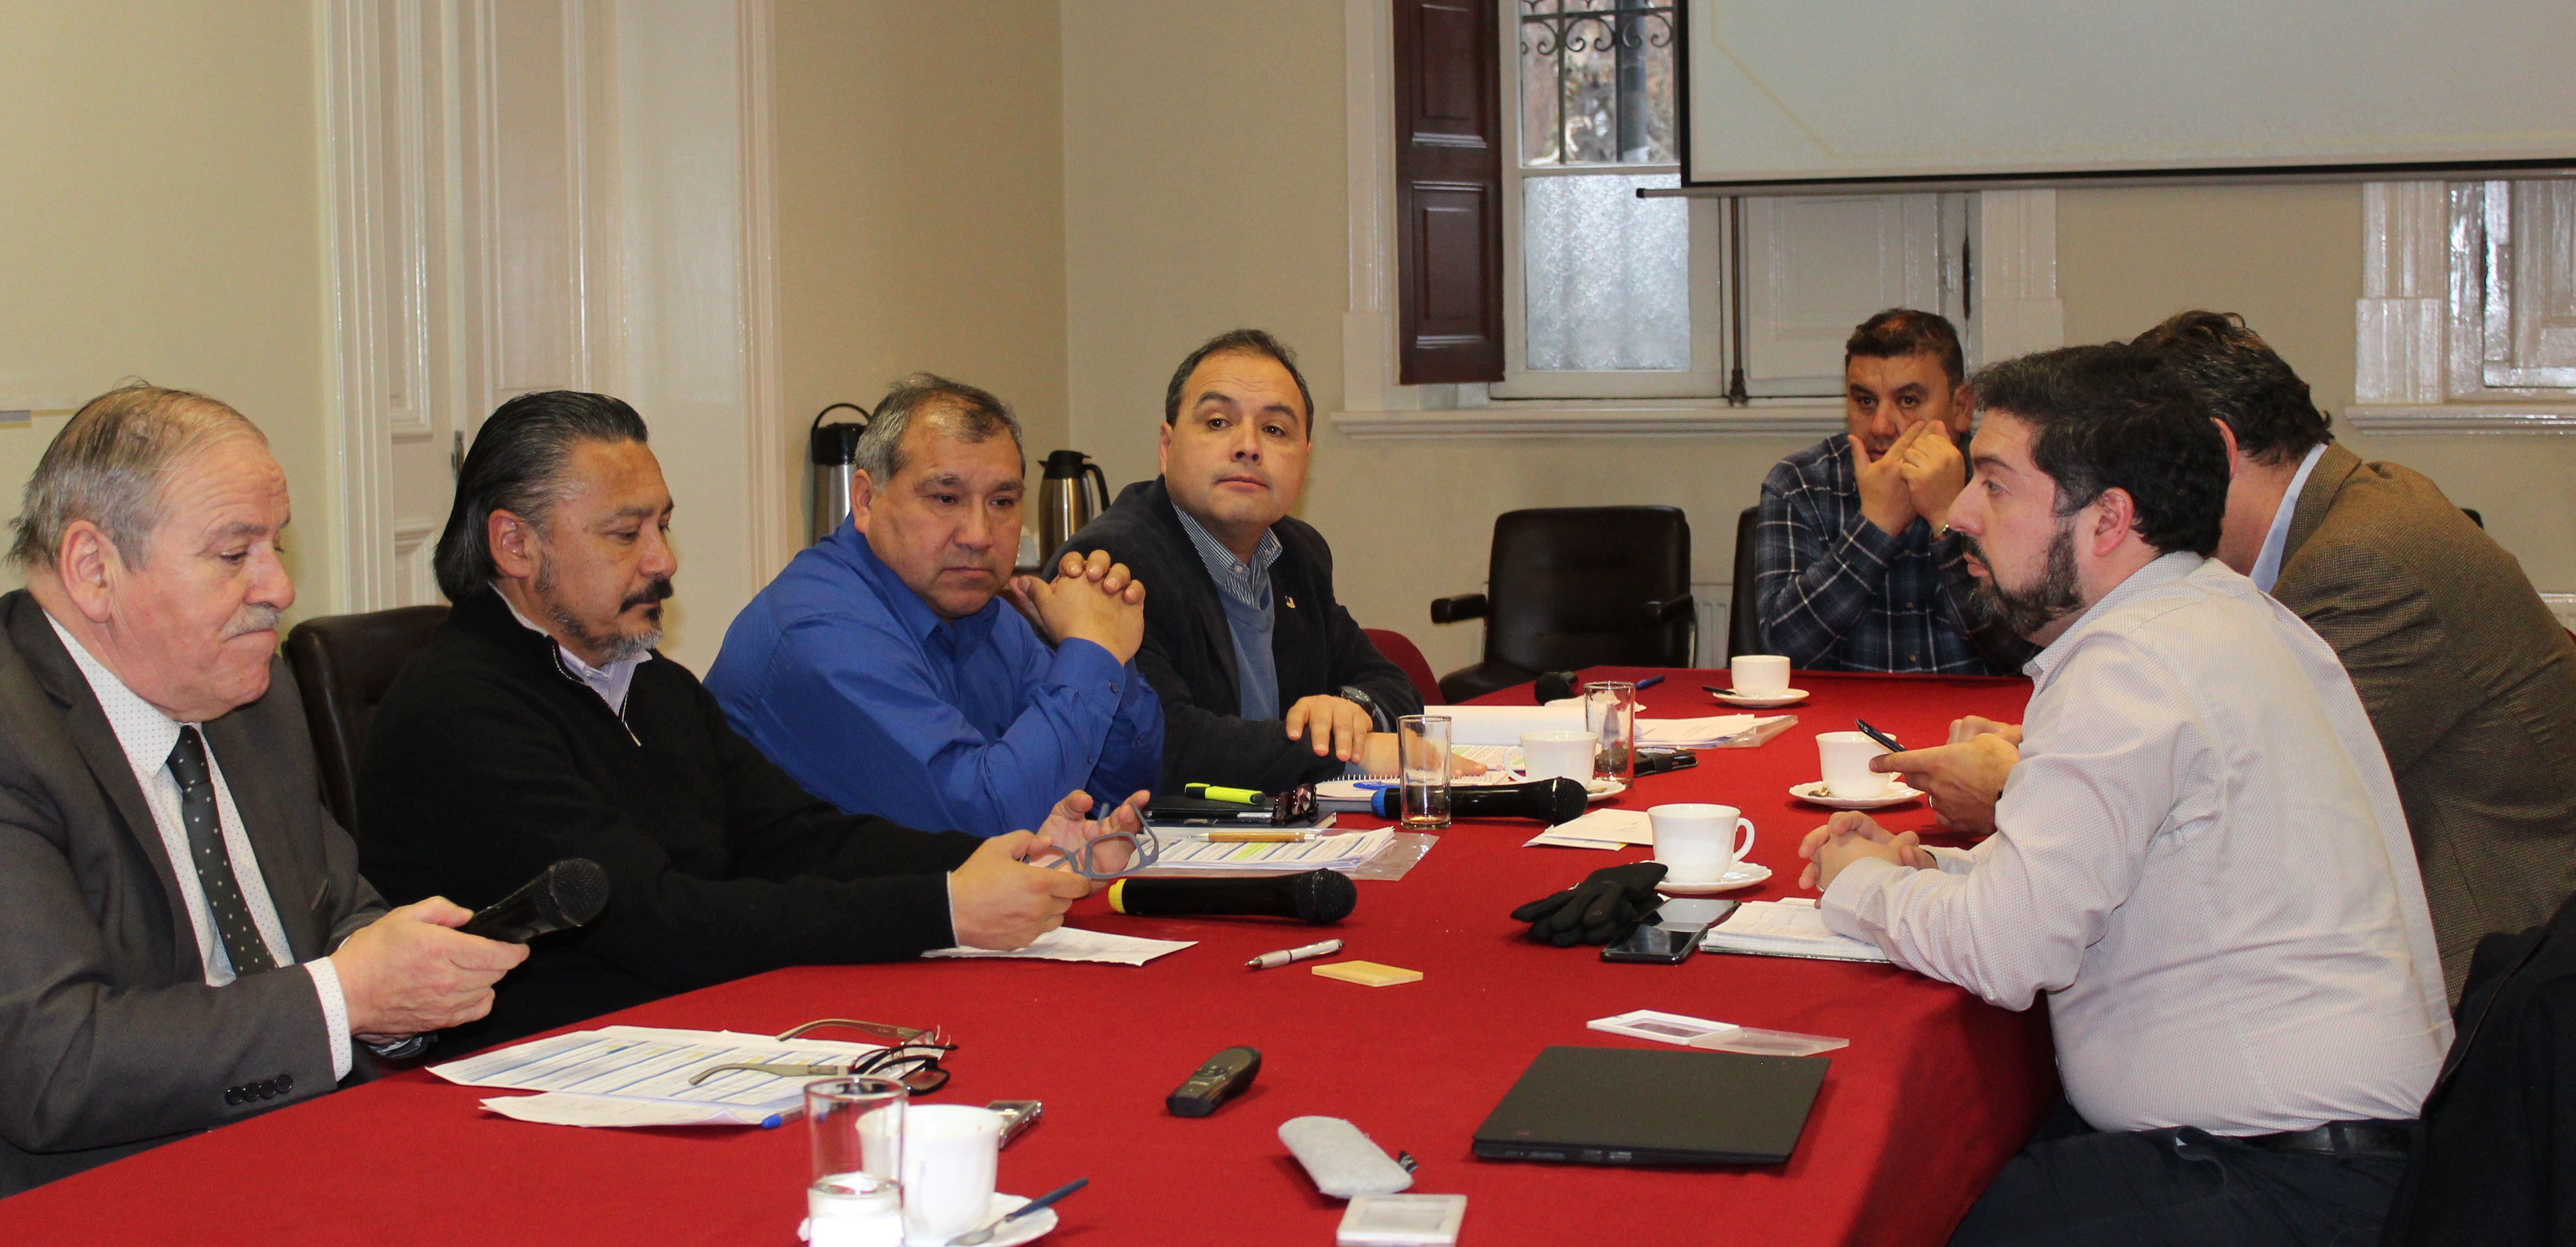 VicePresidente de la Asociación de Salmonicultores de Magallanes se reune con distintas autoridades regionales y sectoriales